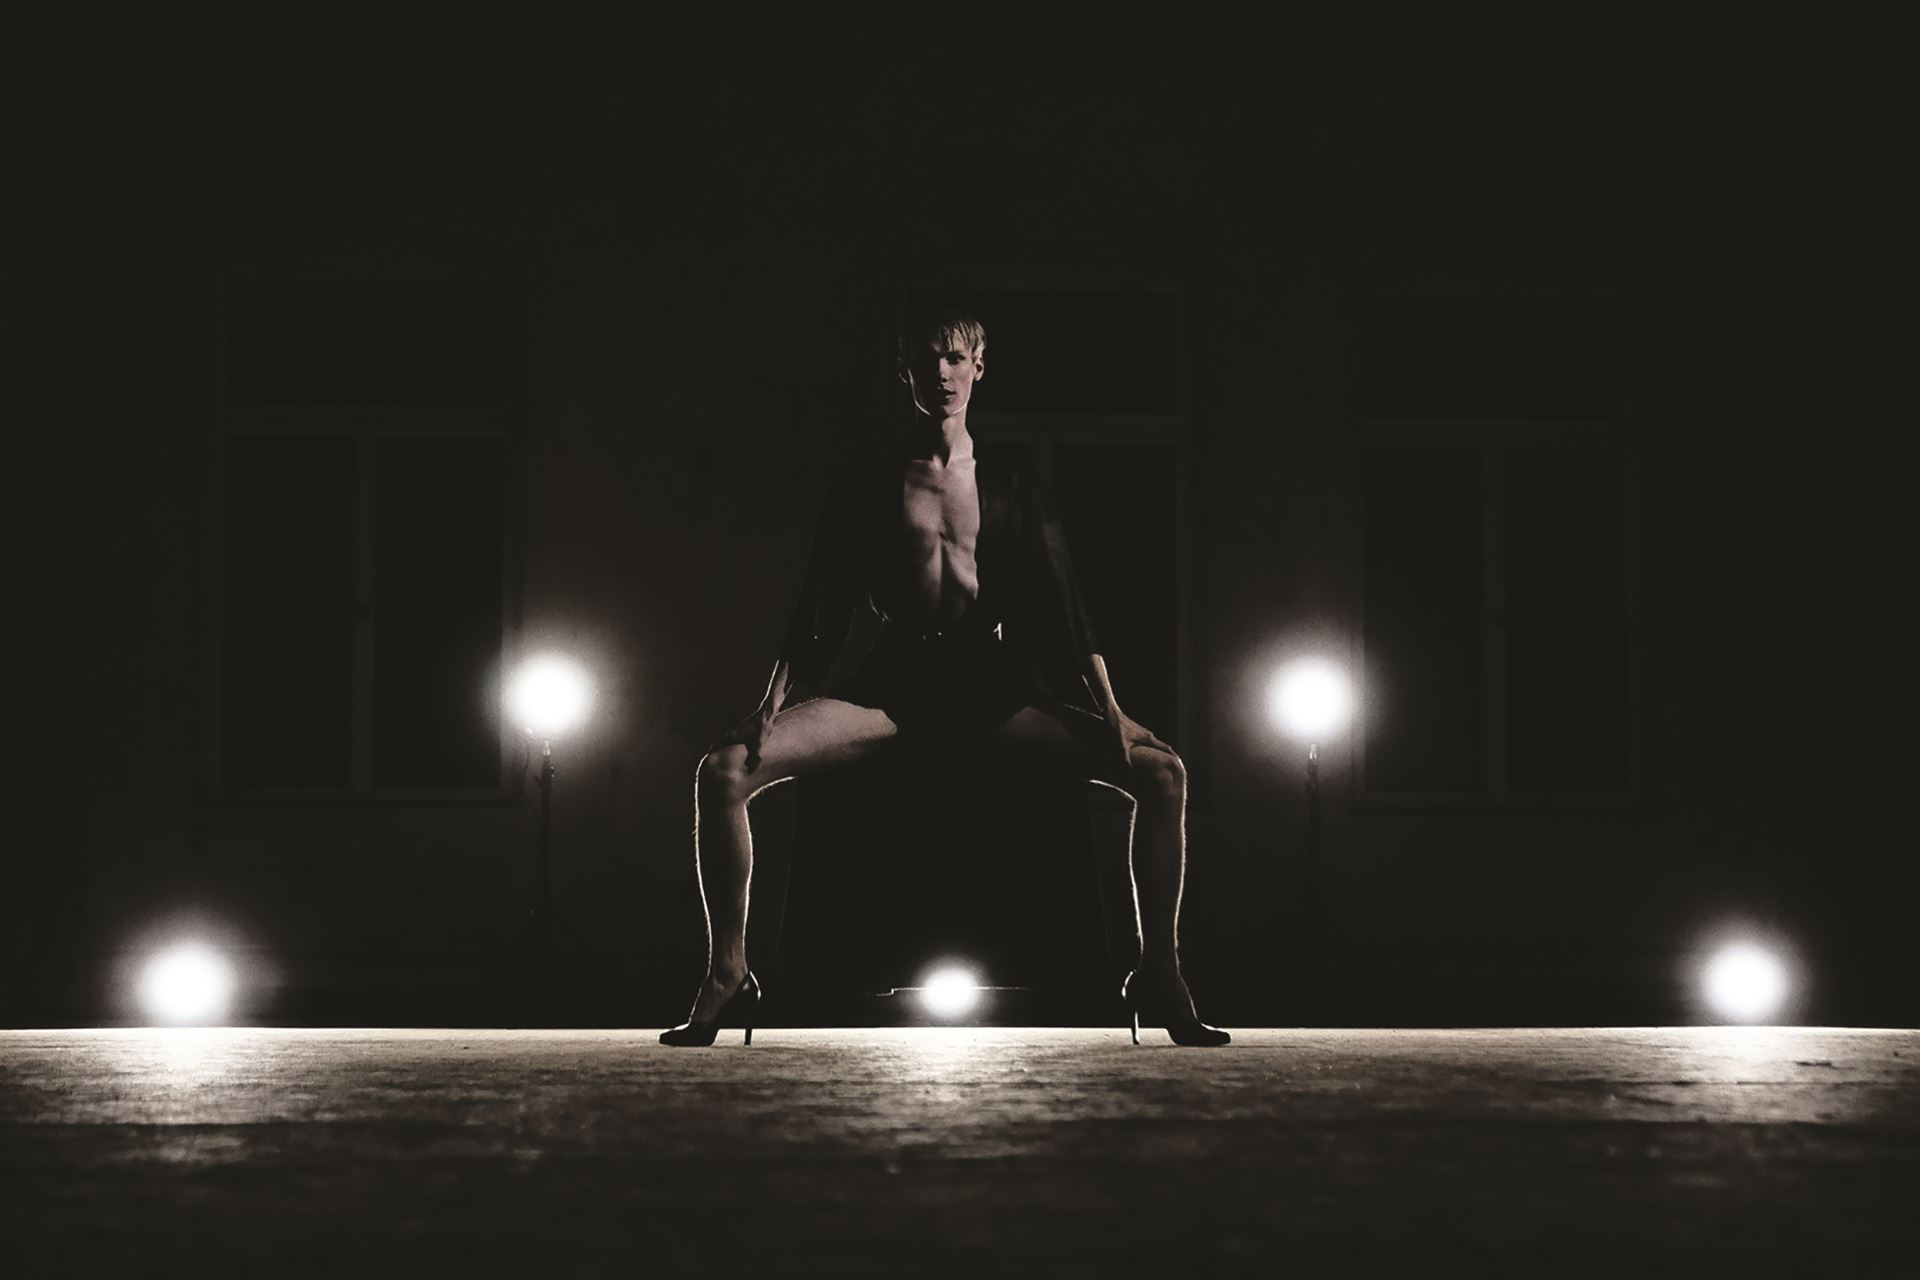 A dancer in a low plié squat.